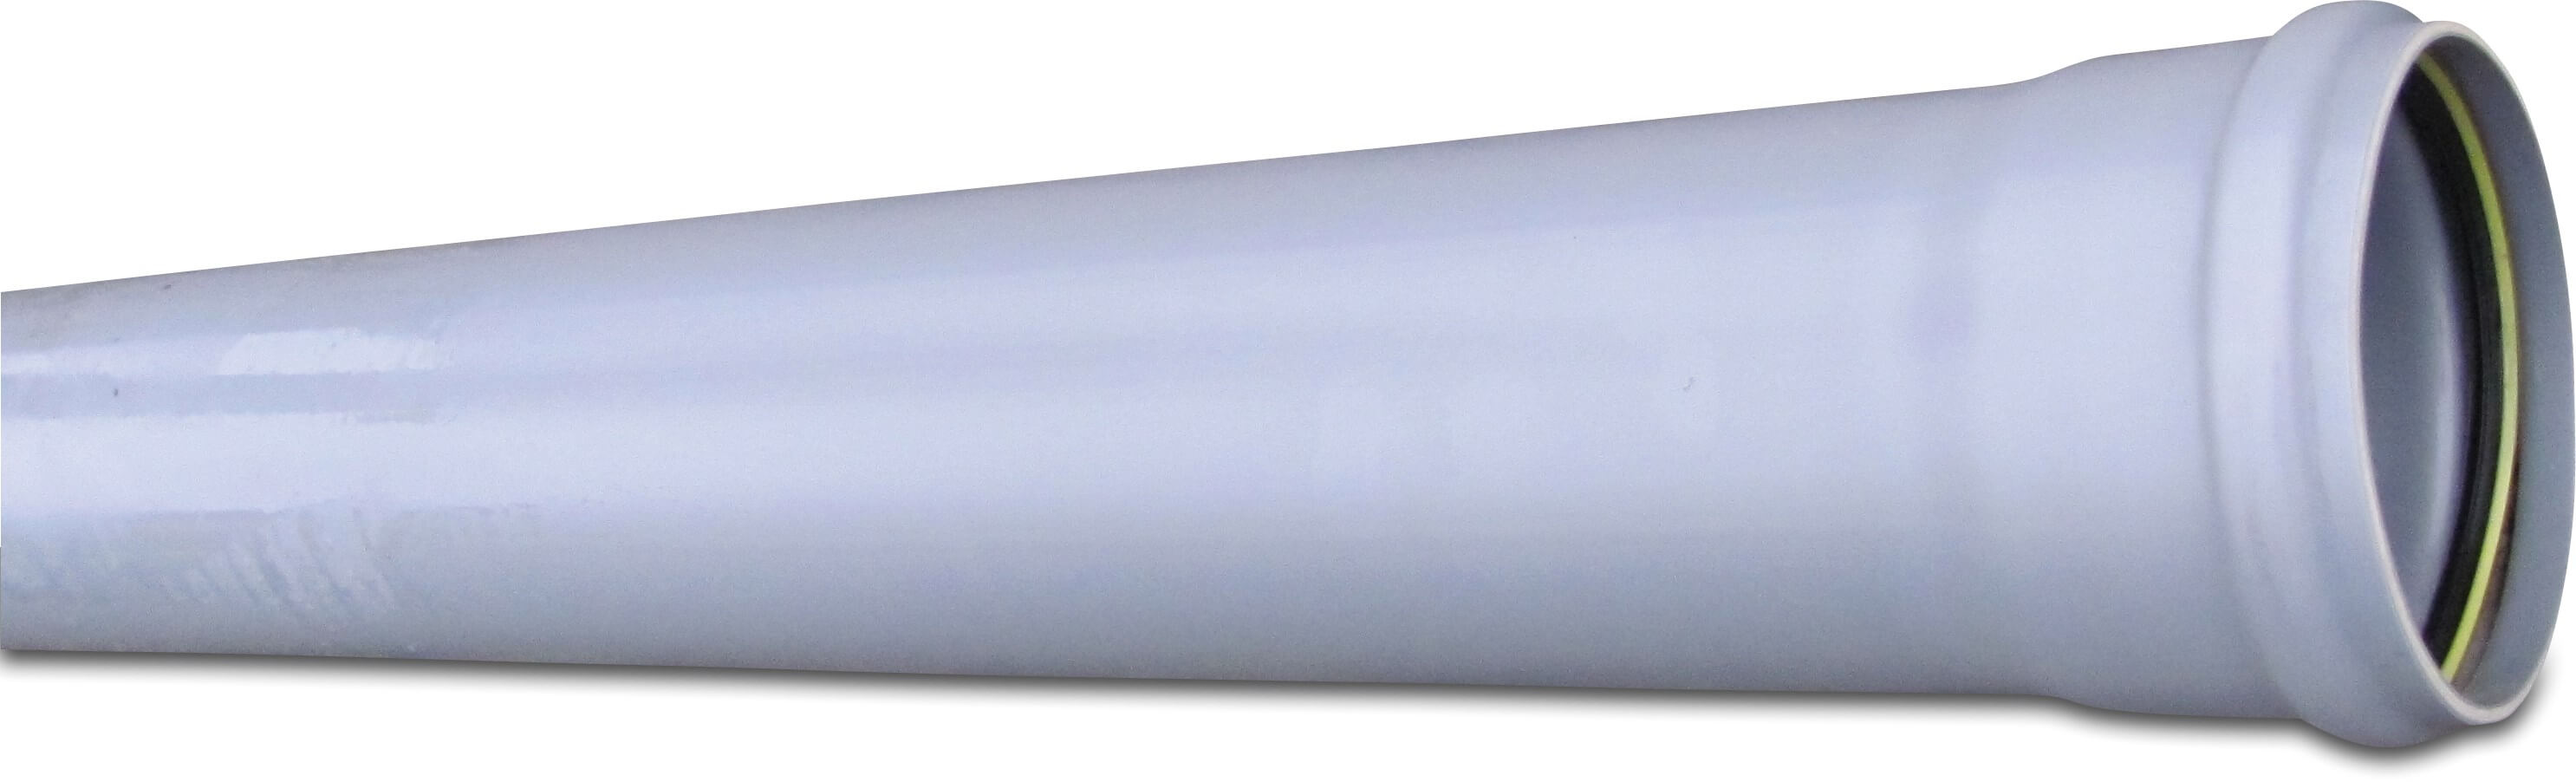 Rura kanalizacyjna PVC-U 125 mm x 3,7 mm SN8 pierścień uszczelniający x gładkie szary 5m KOMO